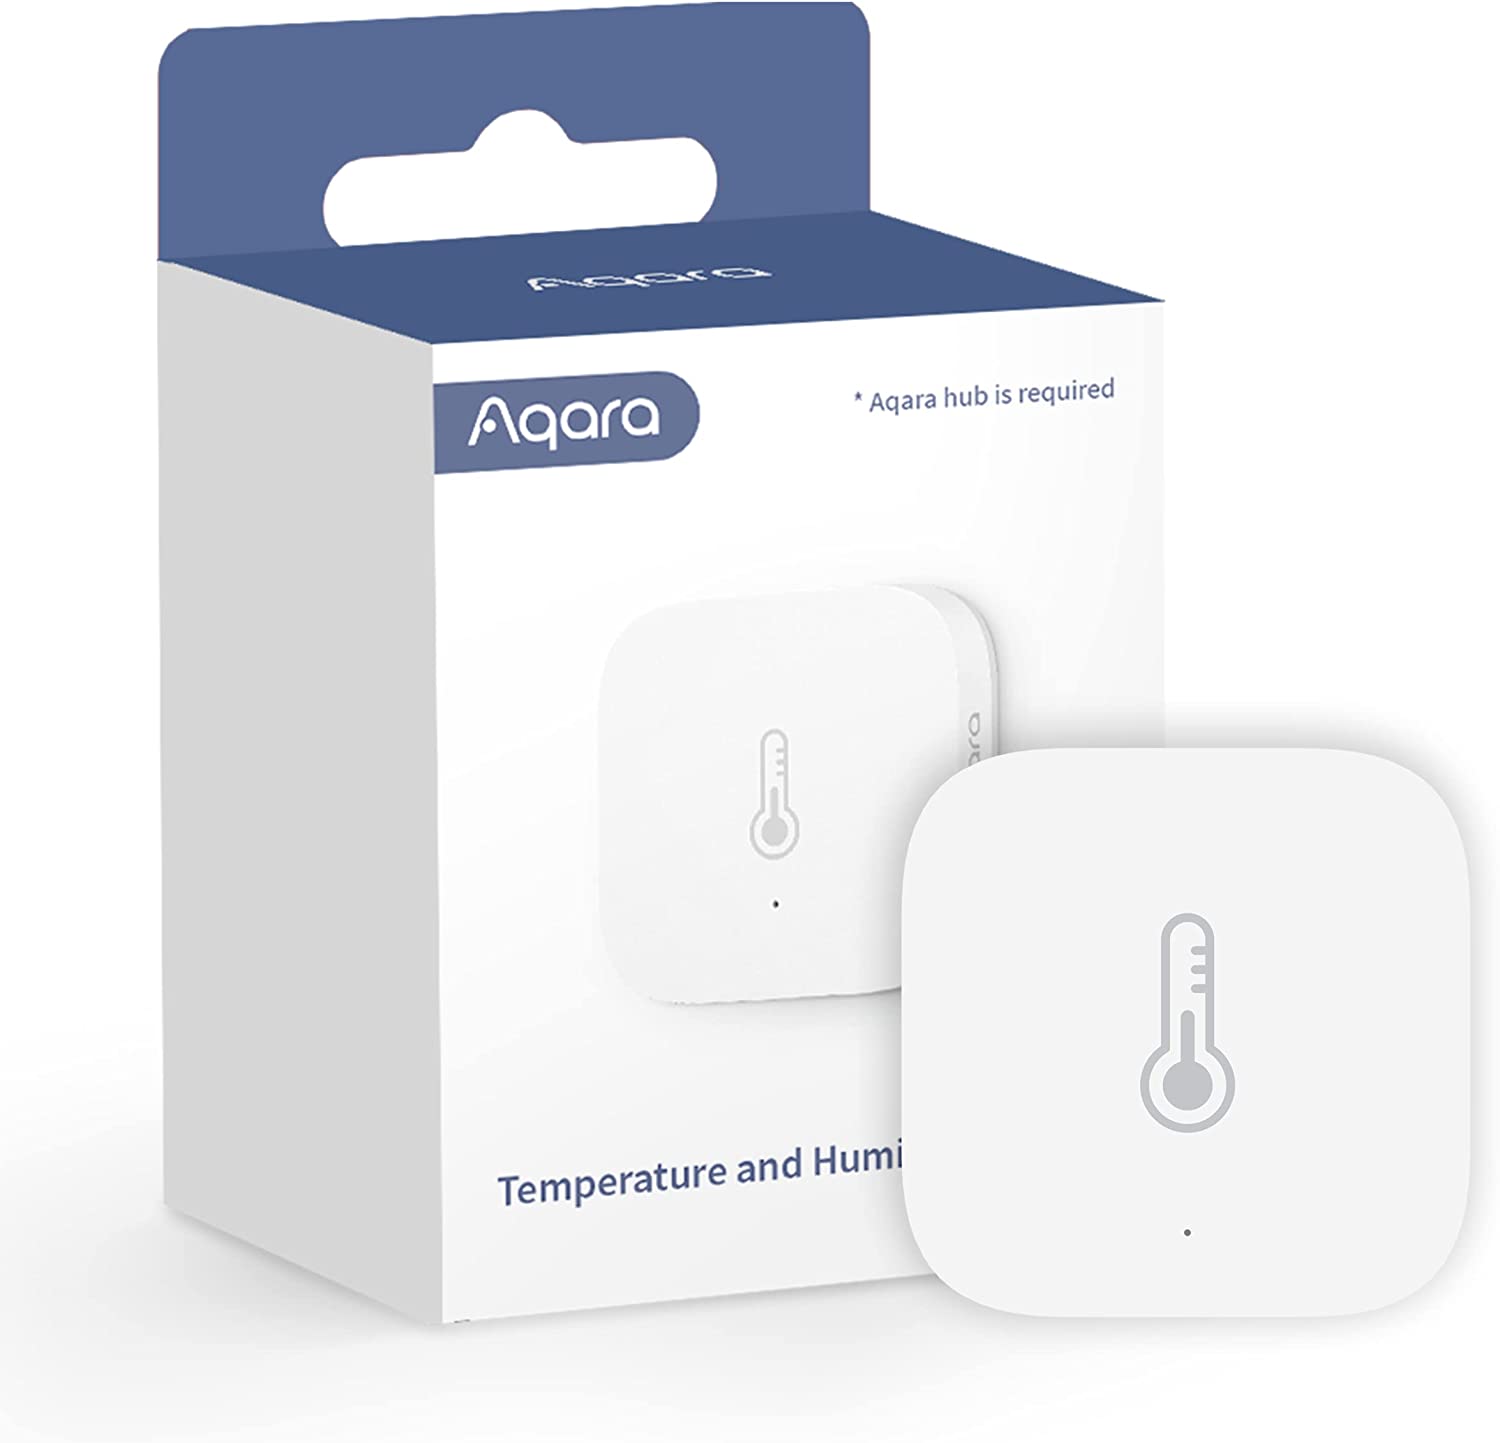 Aqara temperature humidity sensor